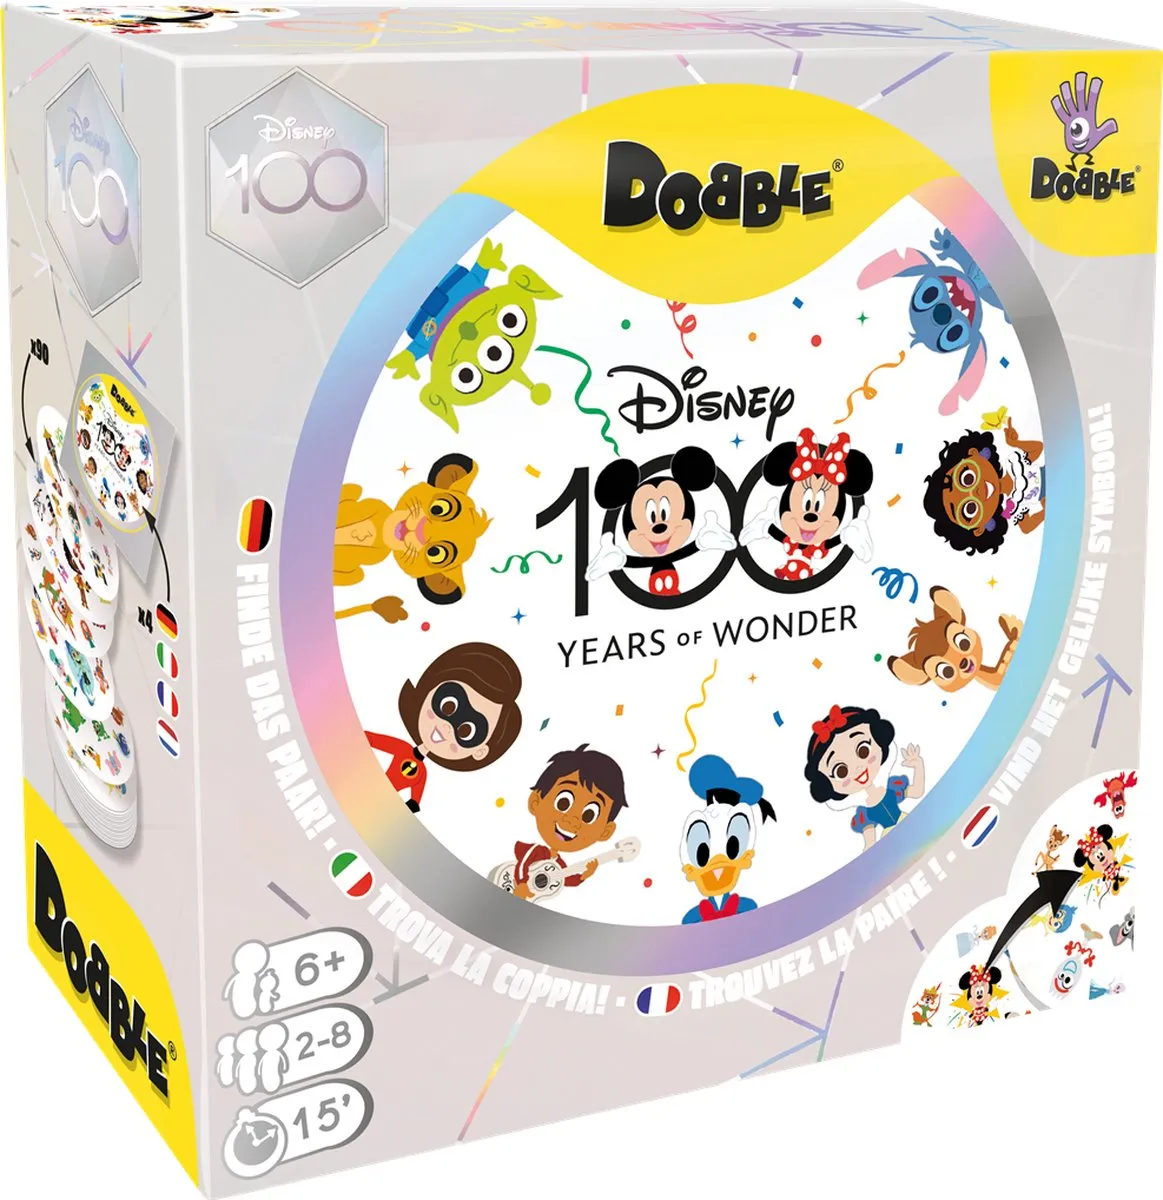 Dobble Disney 100 Years of Wonder - Kaartspel speelgoed